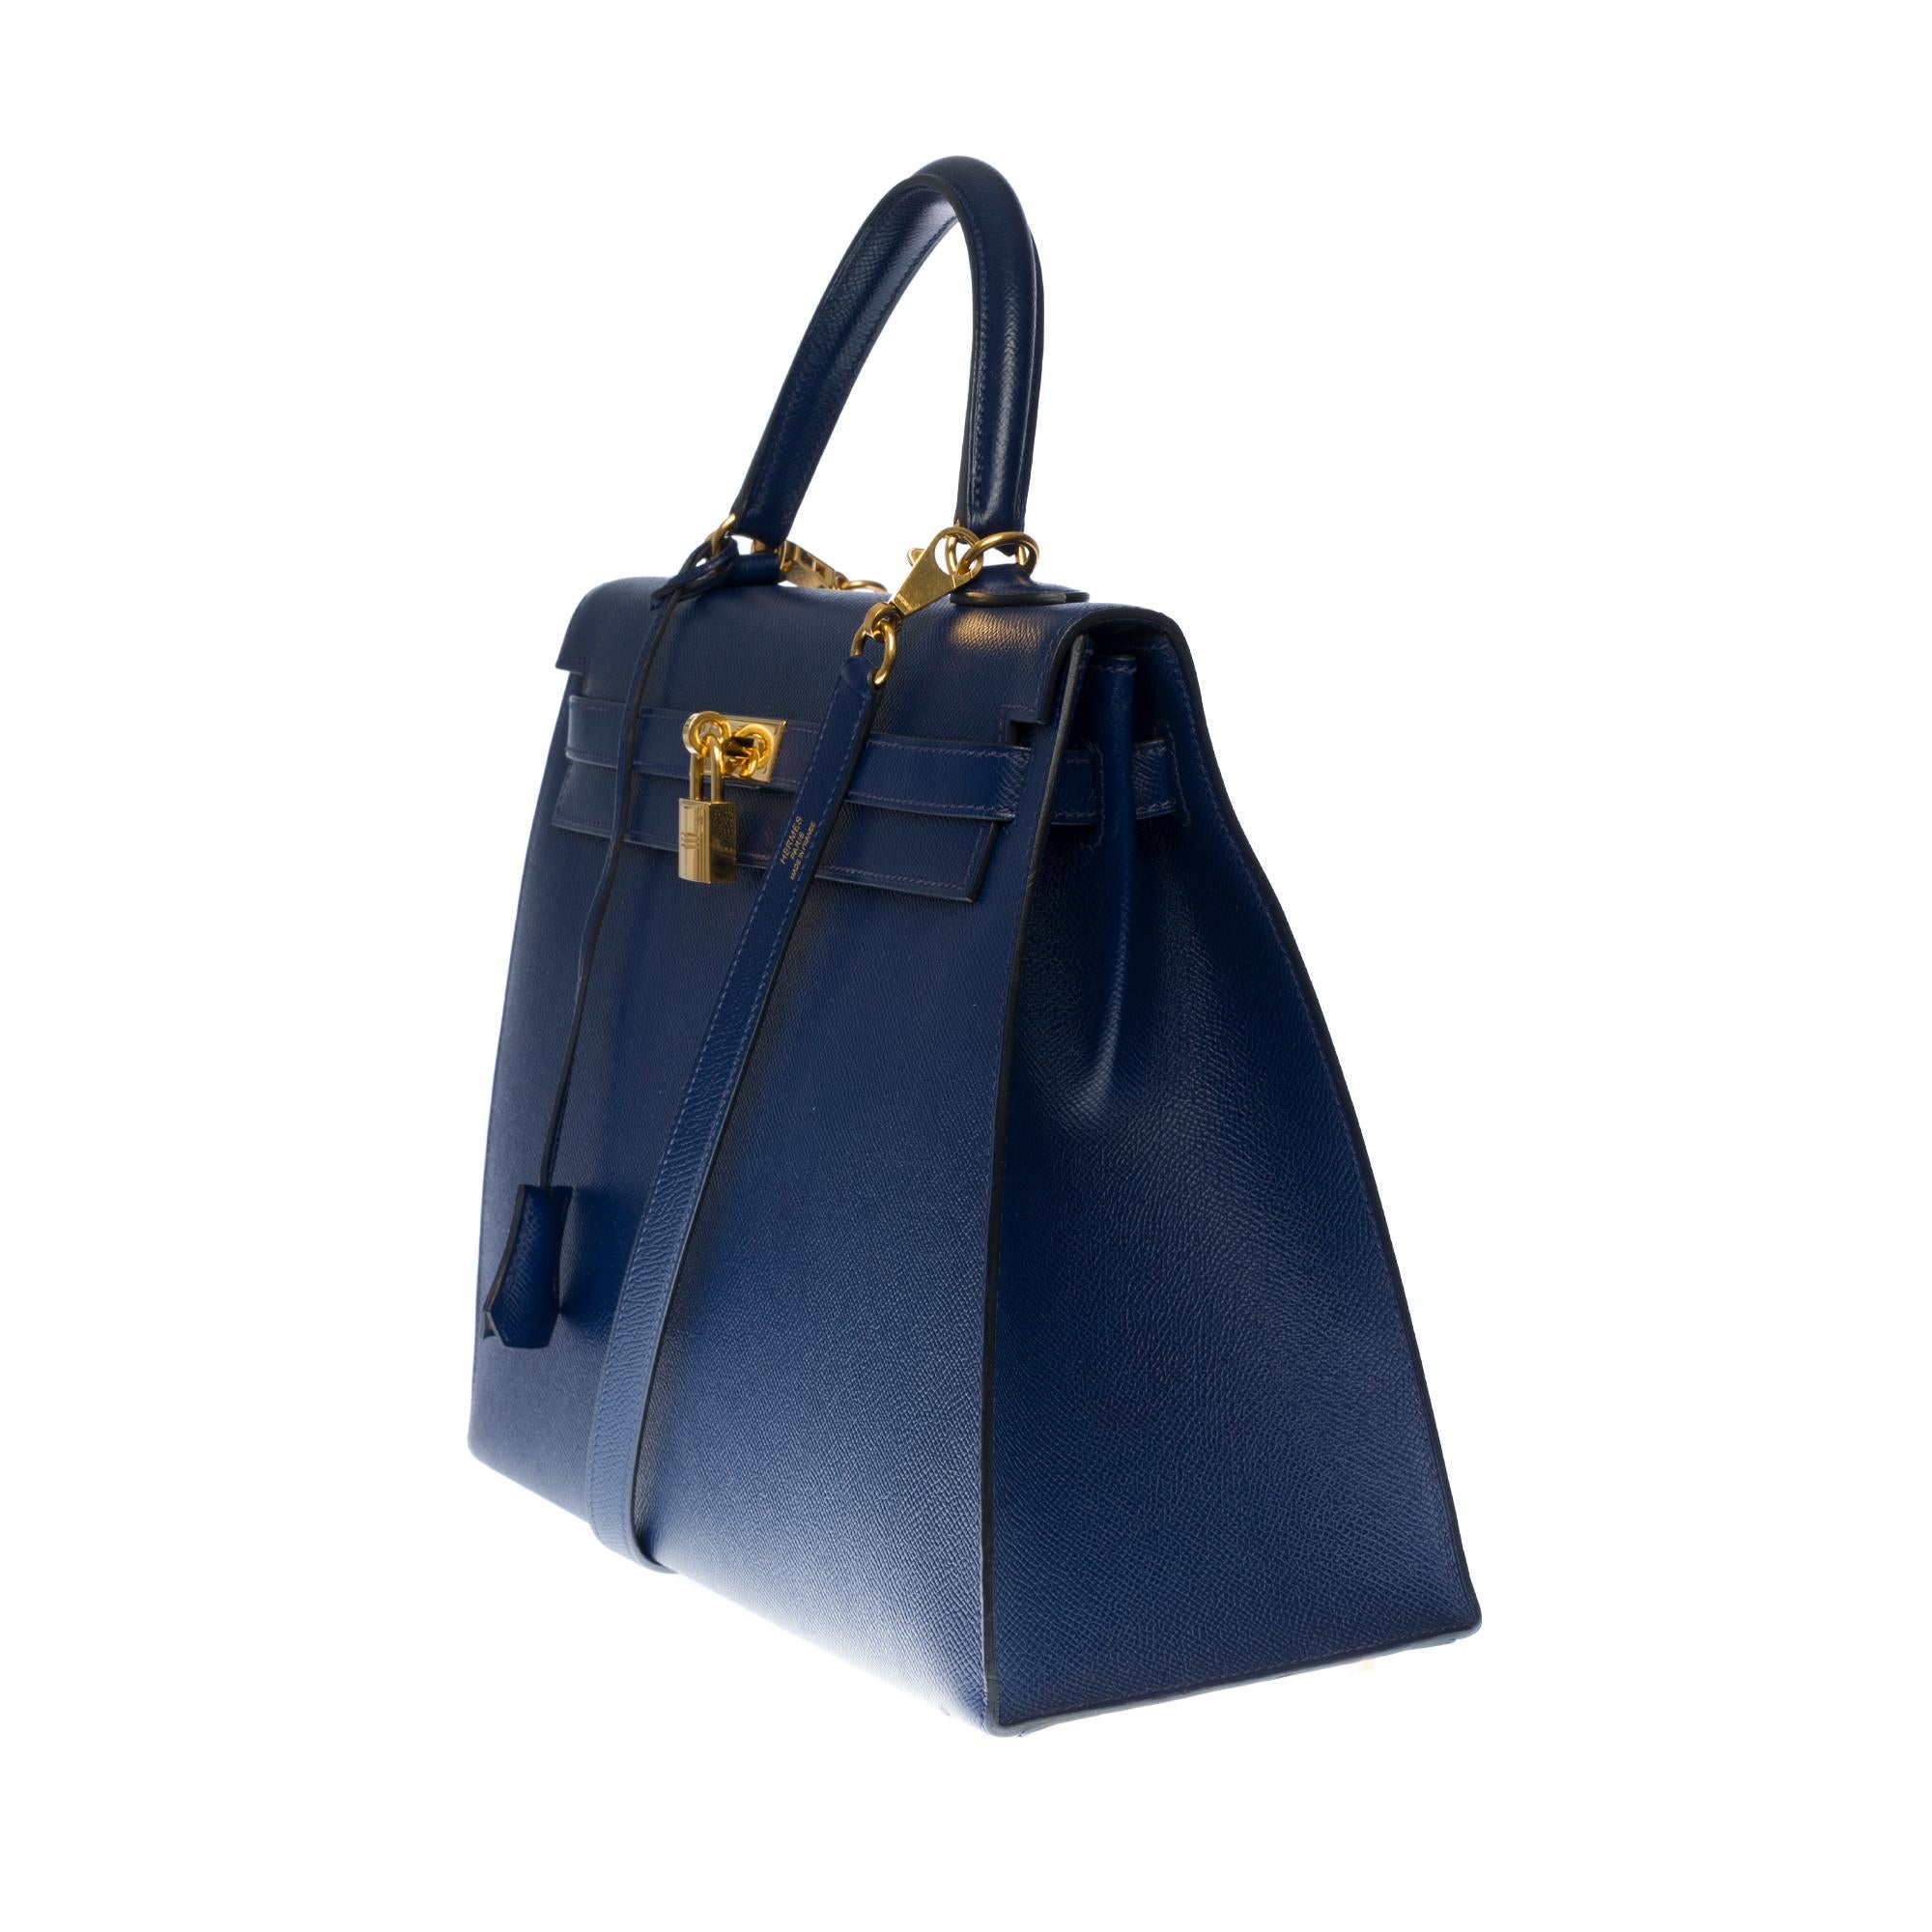 Blue Hermès Kelly 35 sellier strap shoulder bag in epsom blue saphir leather, GHW